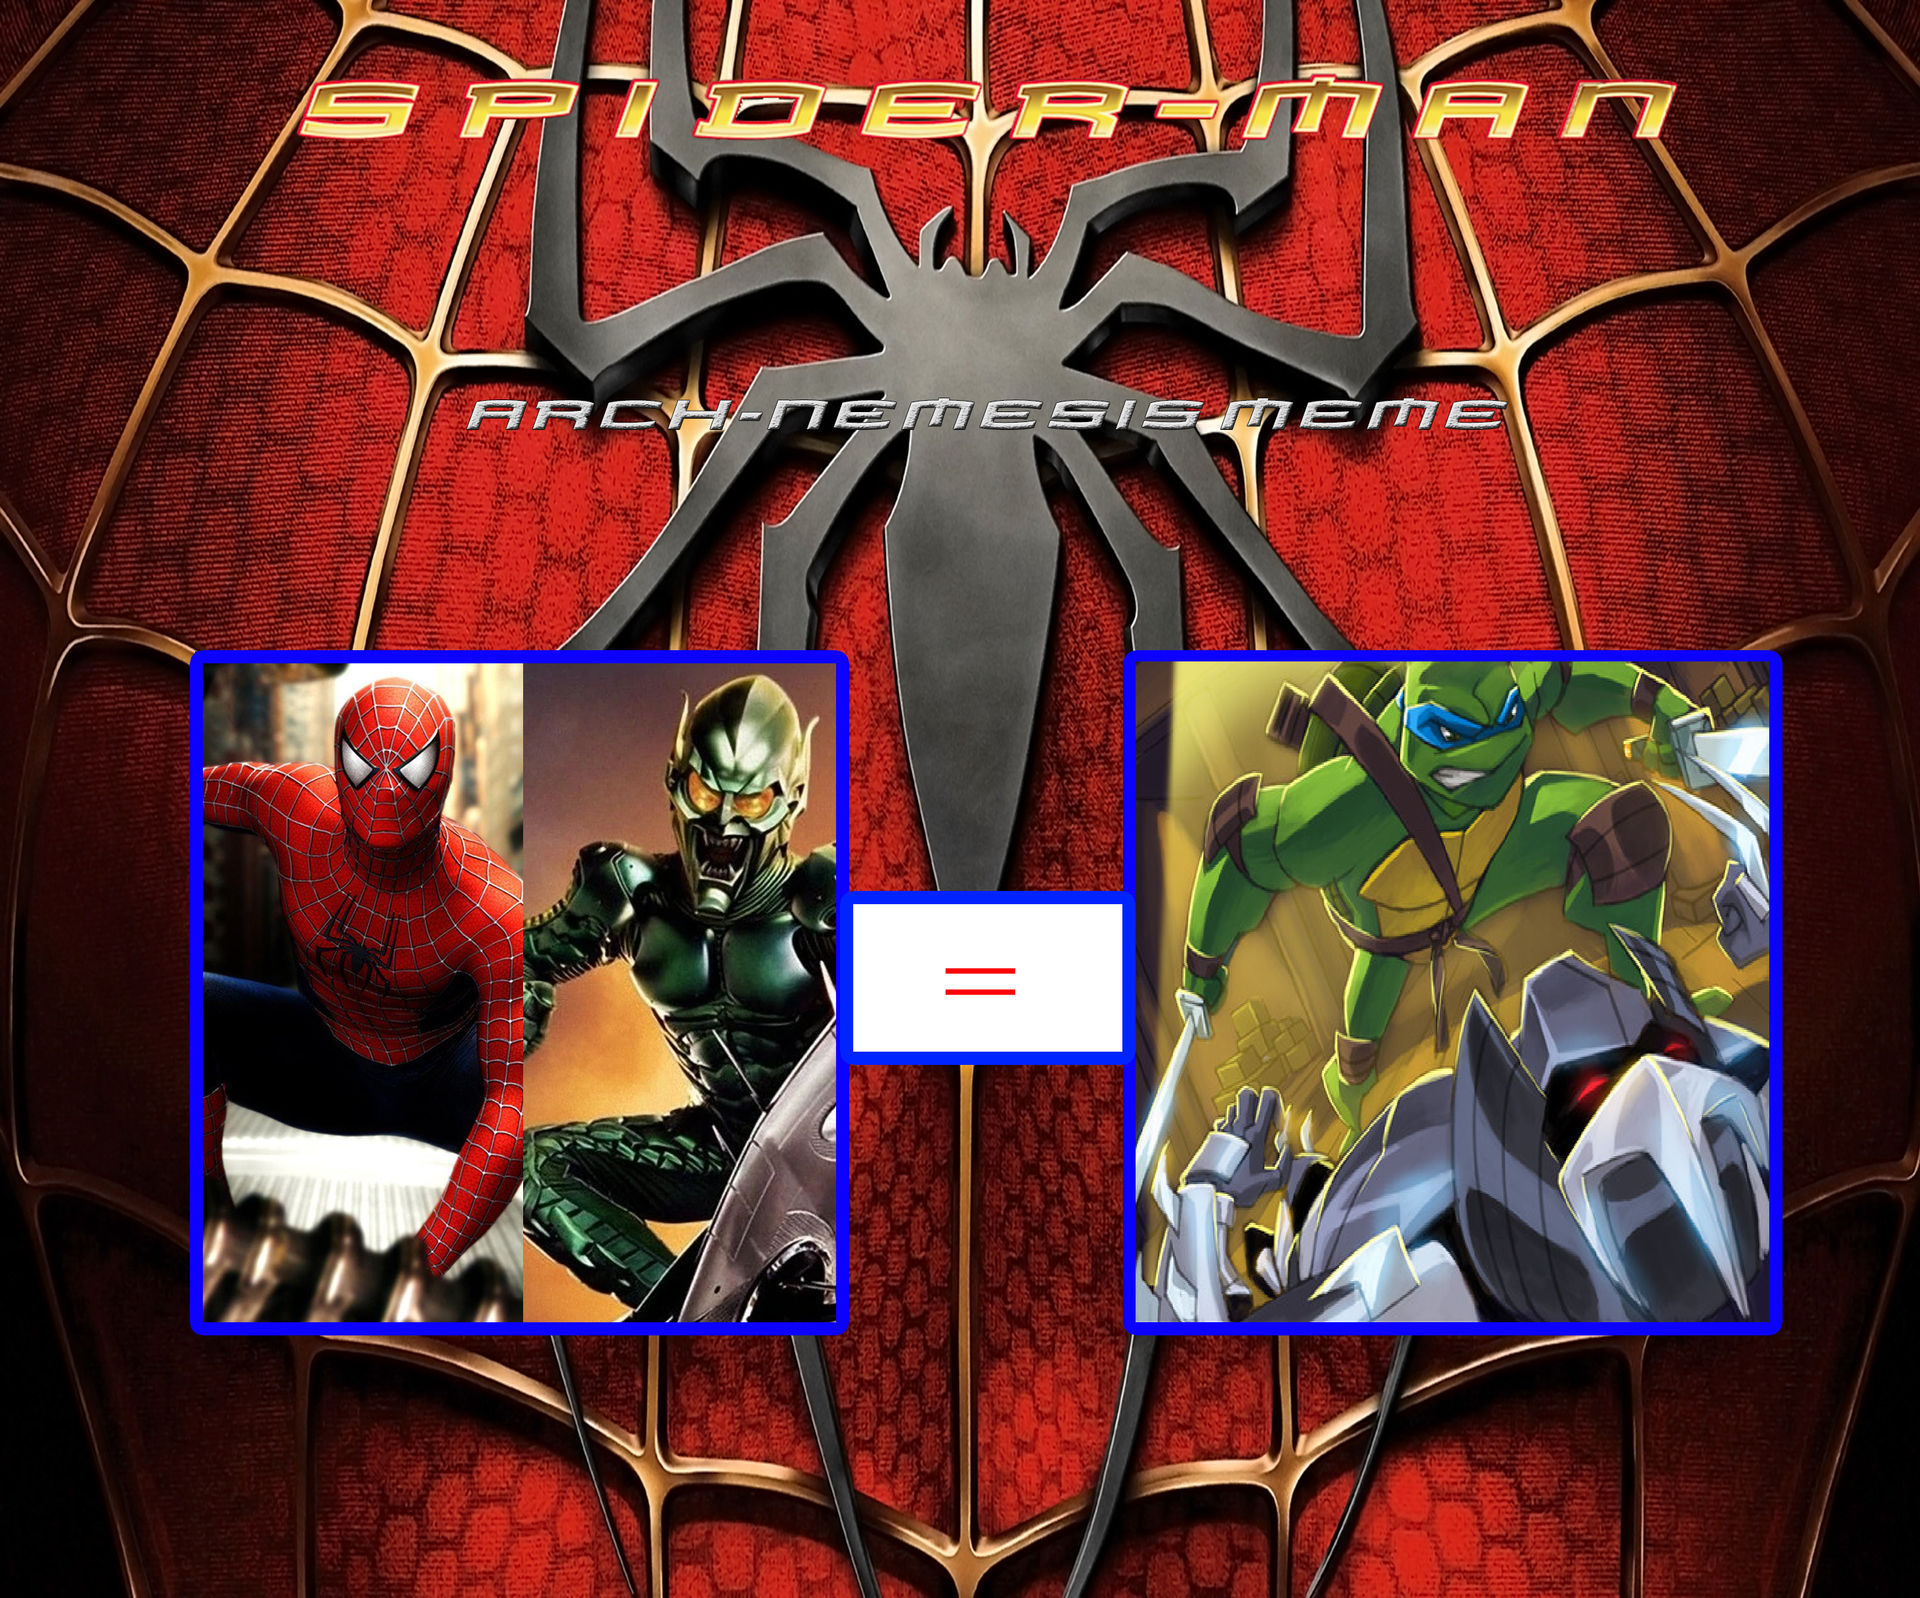 Leo vs Shredder as Spider-Man vs Green Goblin by dmonahan9 on DeviantArt